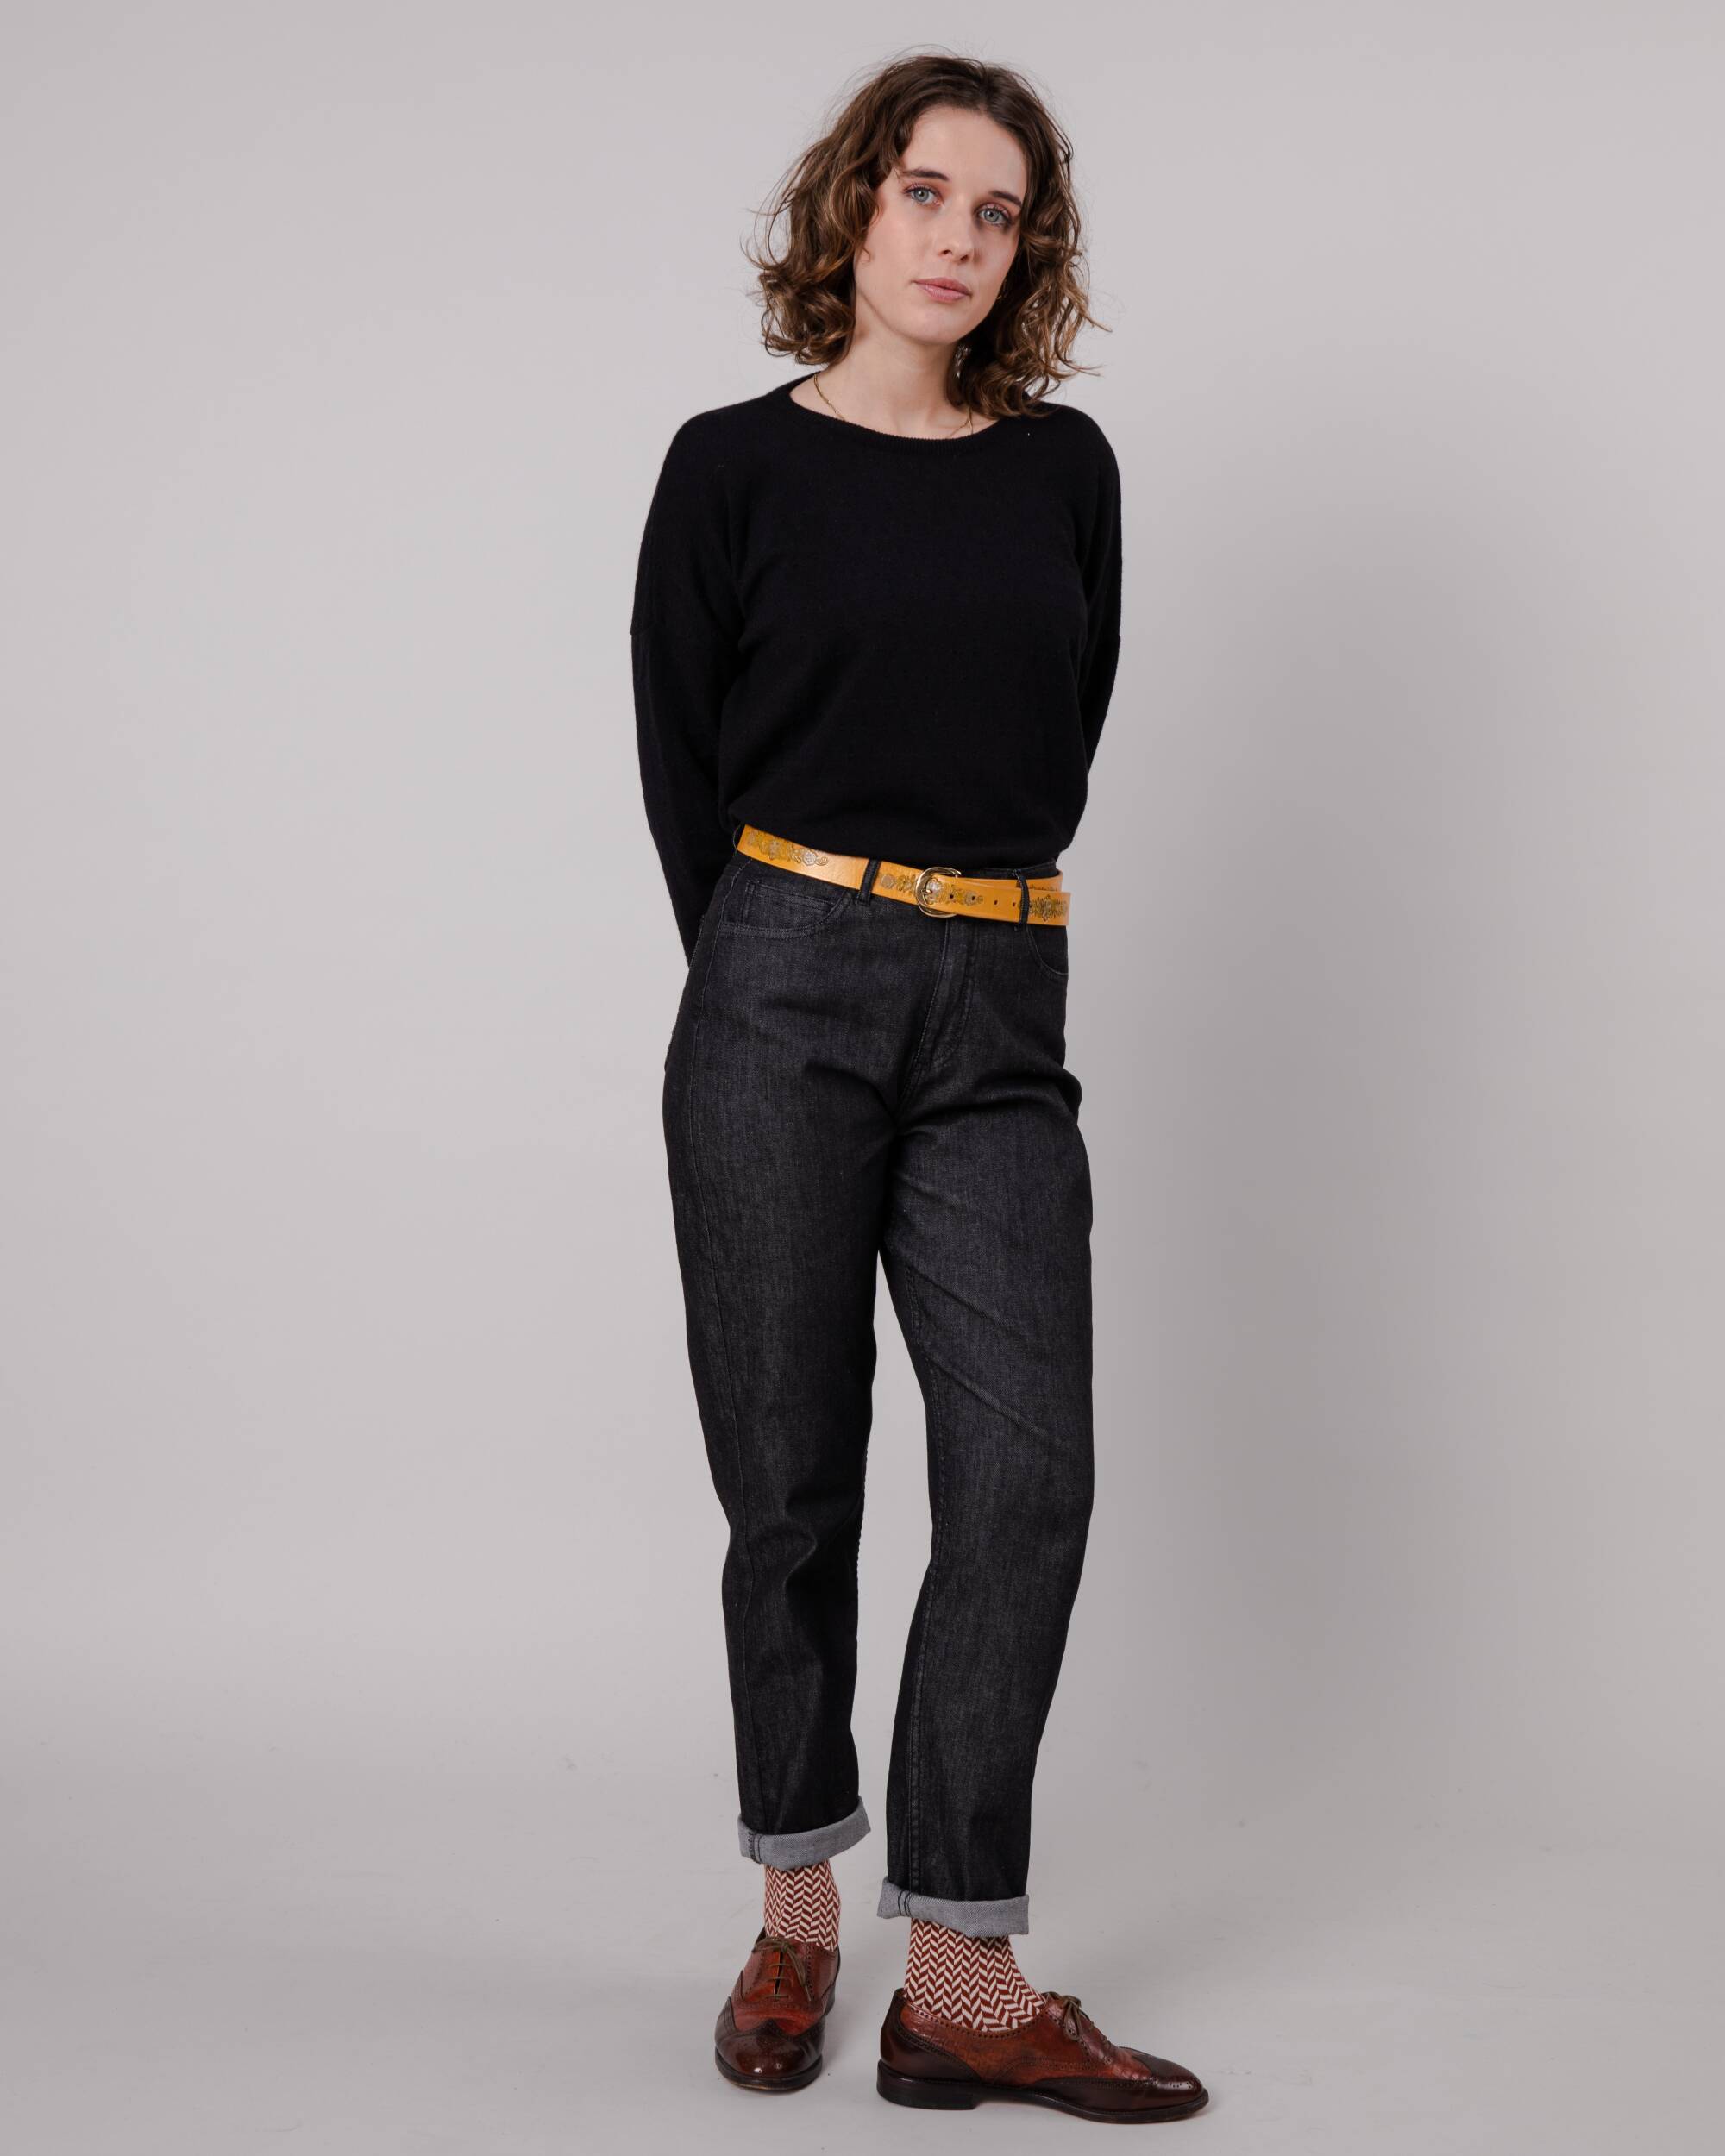 Schwarzer Pullover aus Livaeco-Viskose, Polyester und Polyamid von Brava Fabrics